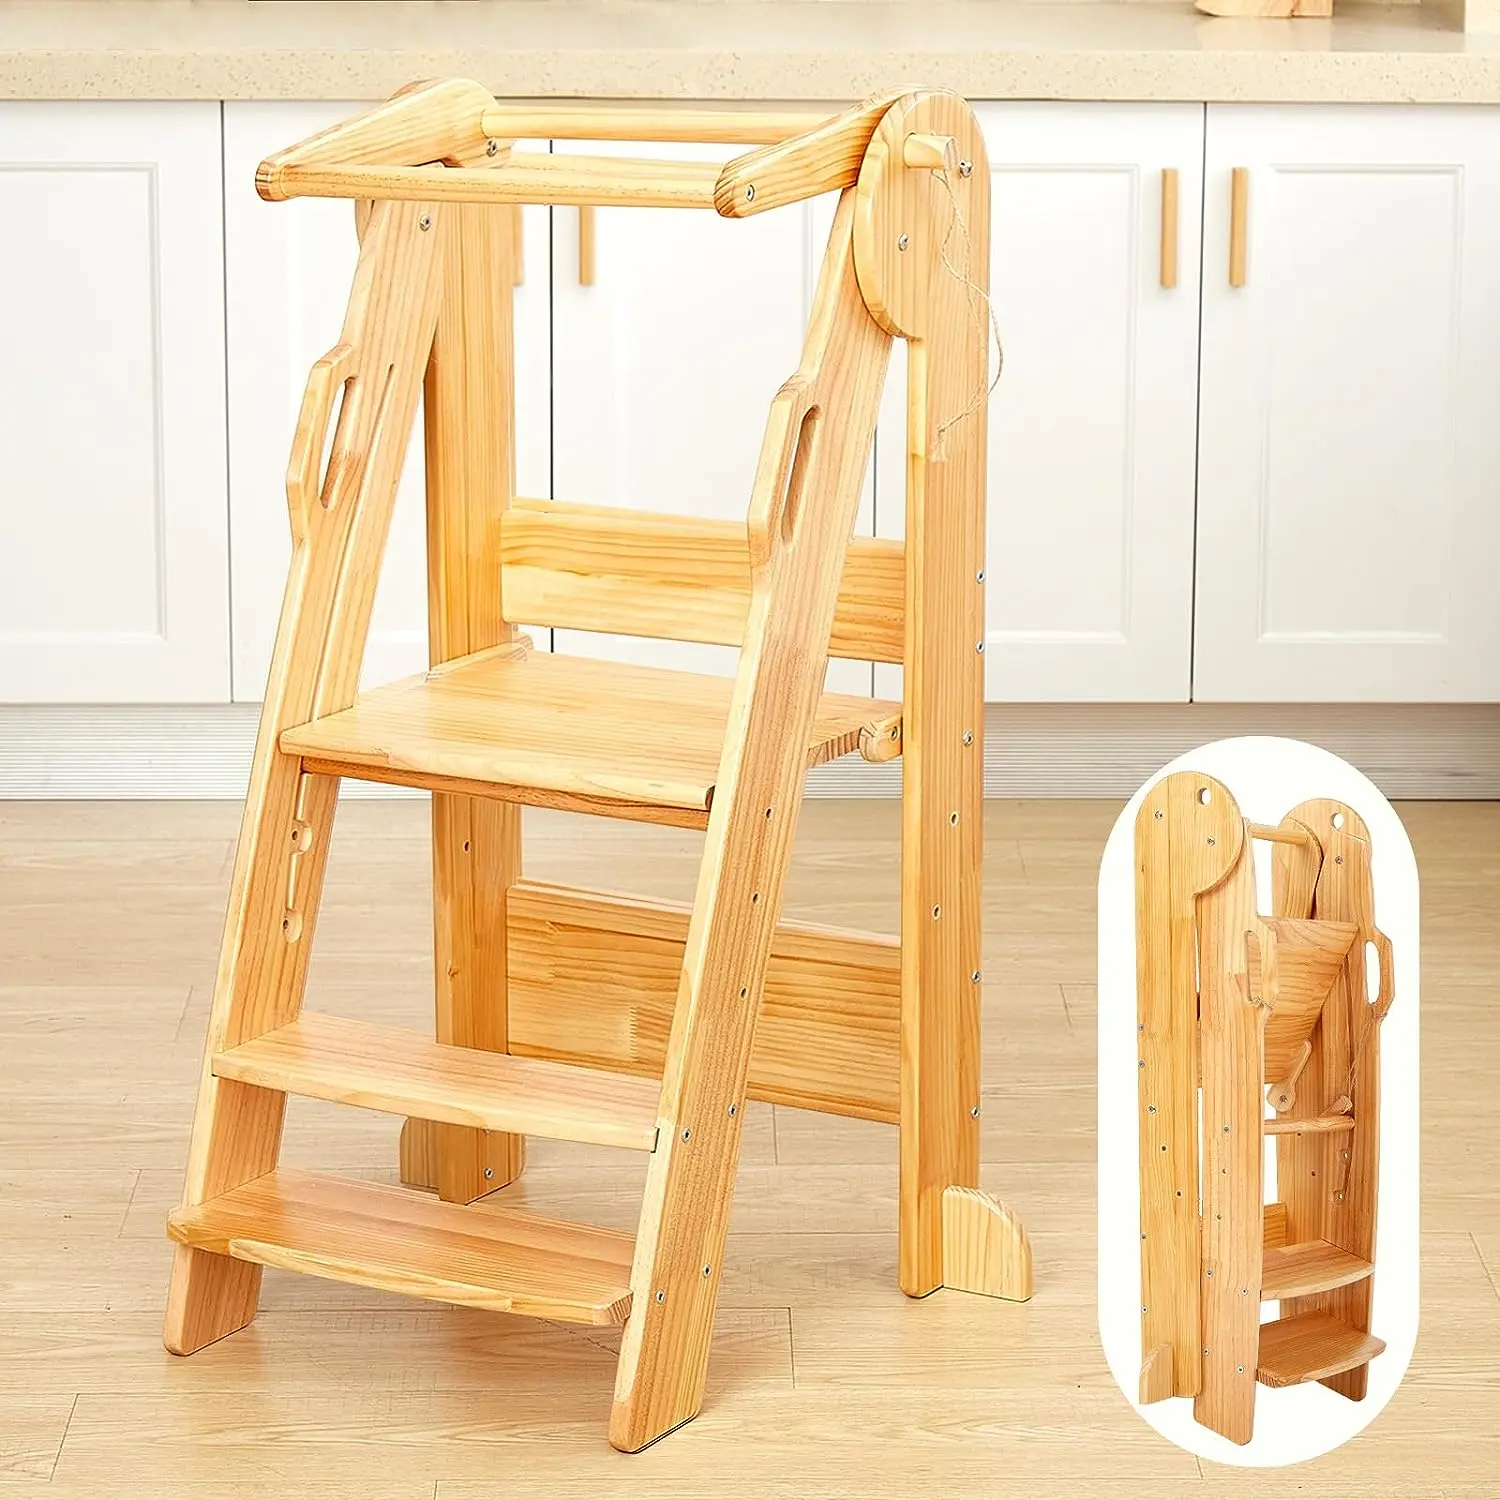 Taburete de cocina de madera plegable para niños, torre de madera de 3 niveles para niños pequeños con rieles de seguridad, torre de pie de madera Montessori para niños